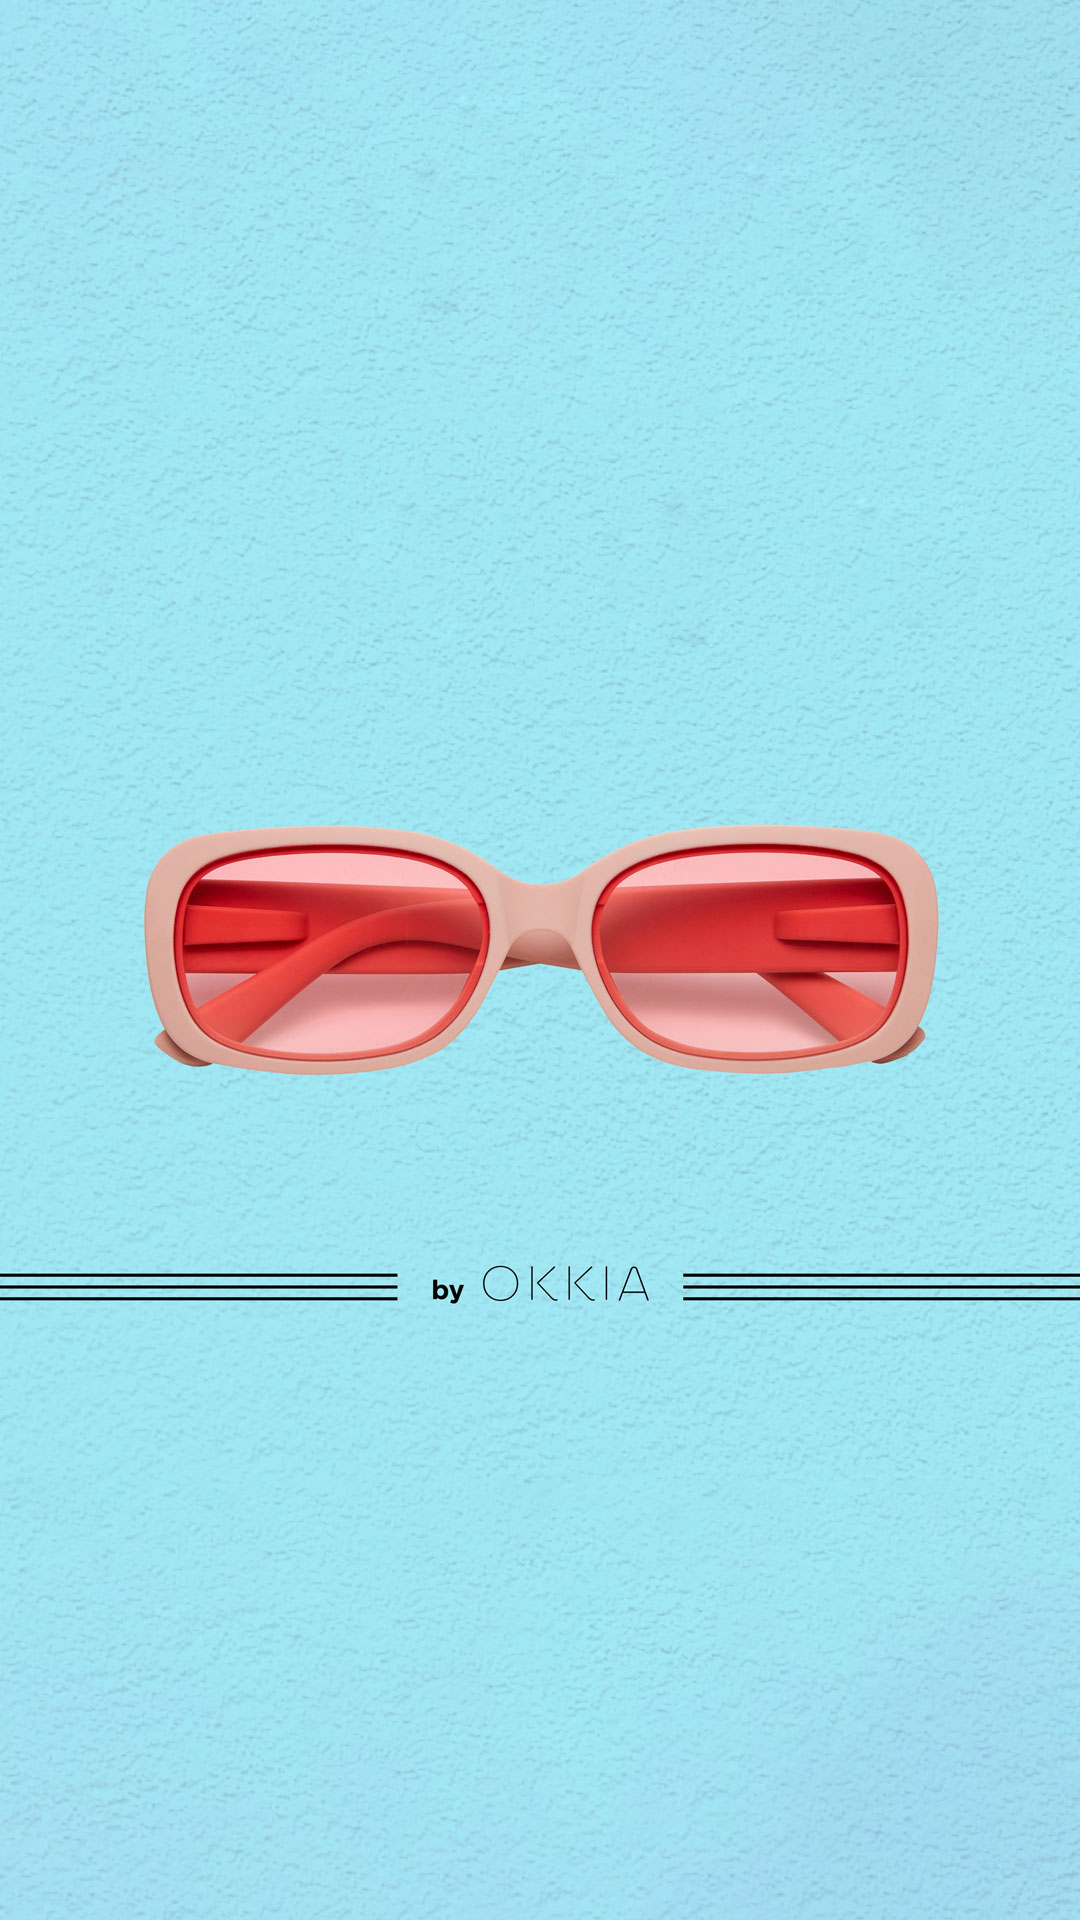 myho-okkia-occhiali